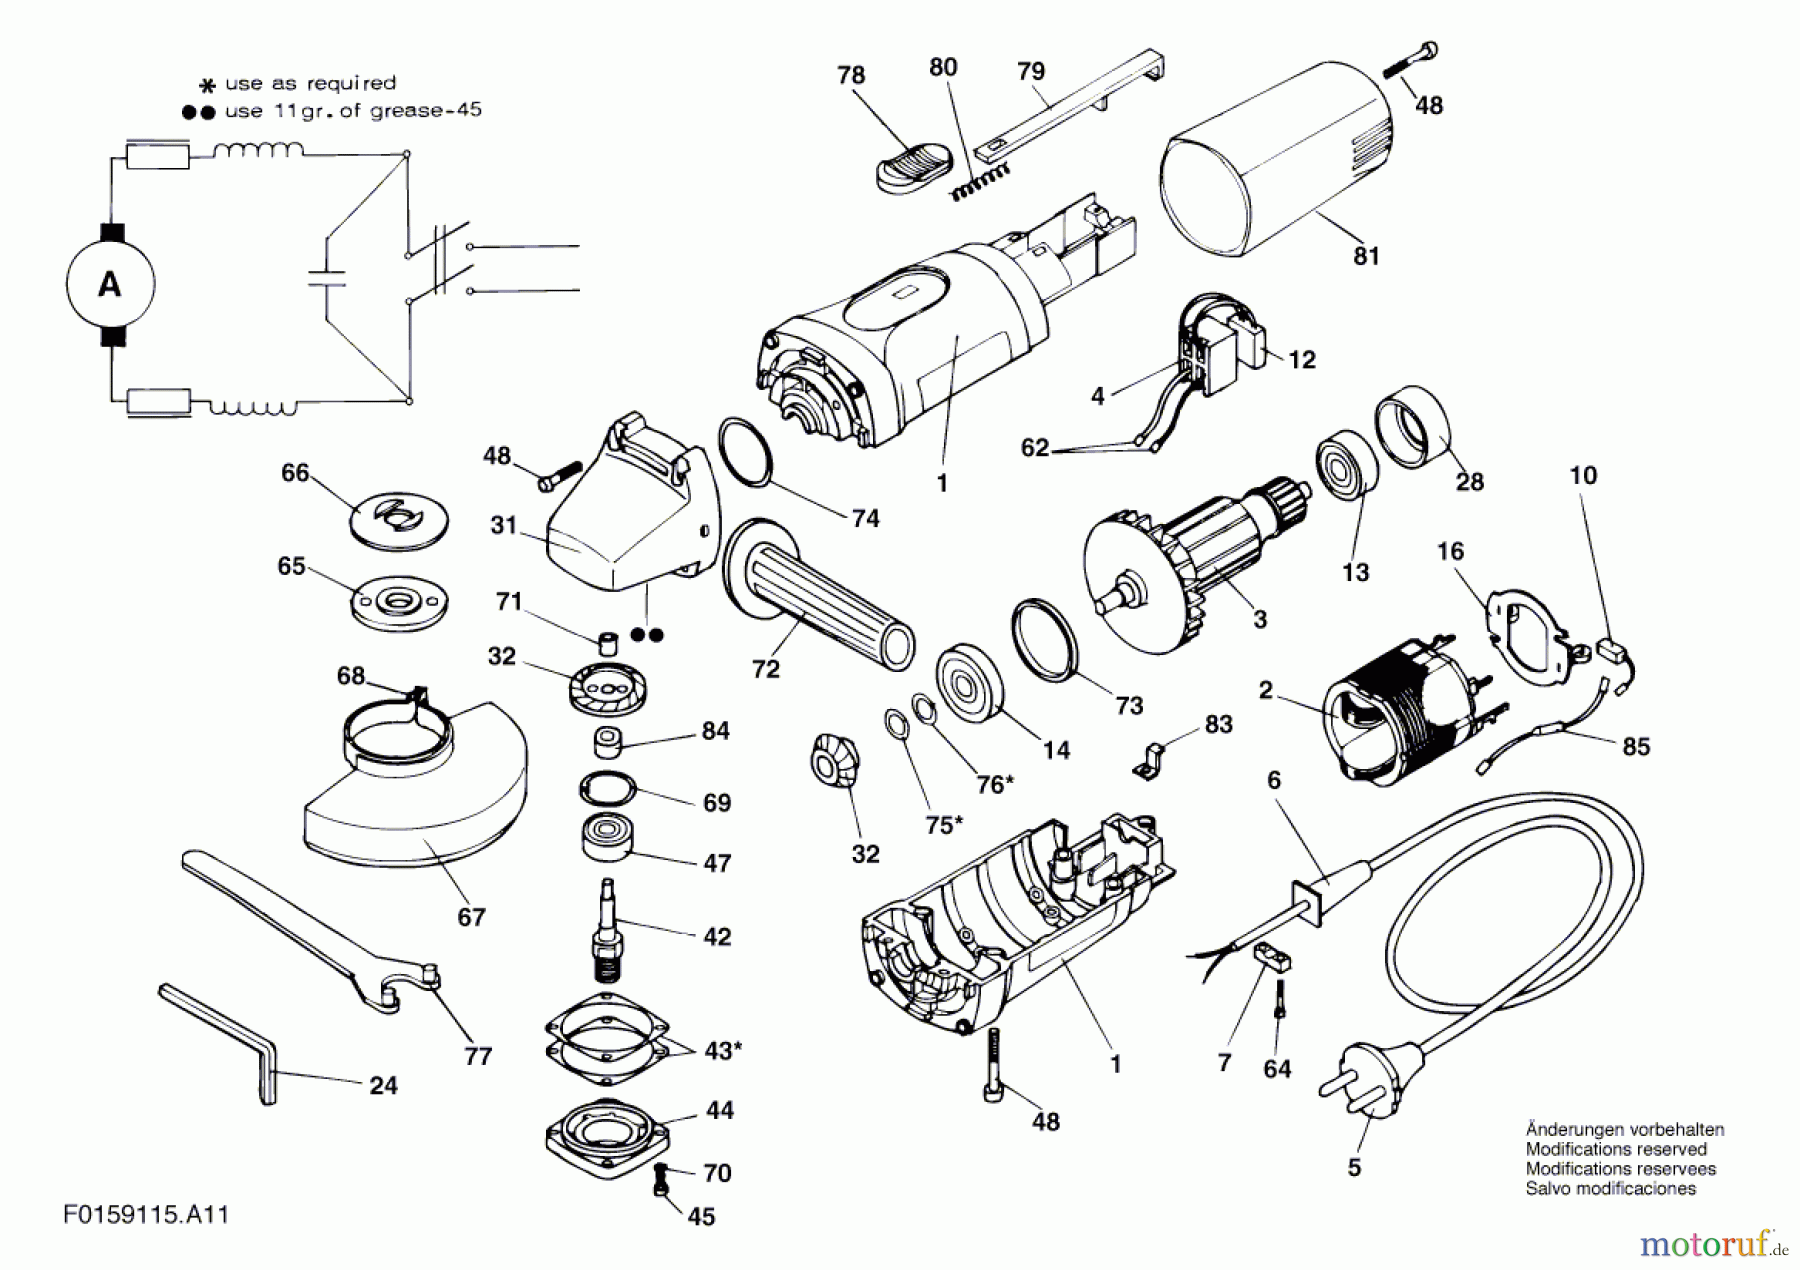  Bosch Werkzeug Winkelschleifer 9115 H1 Seite 1